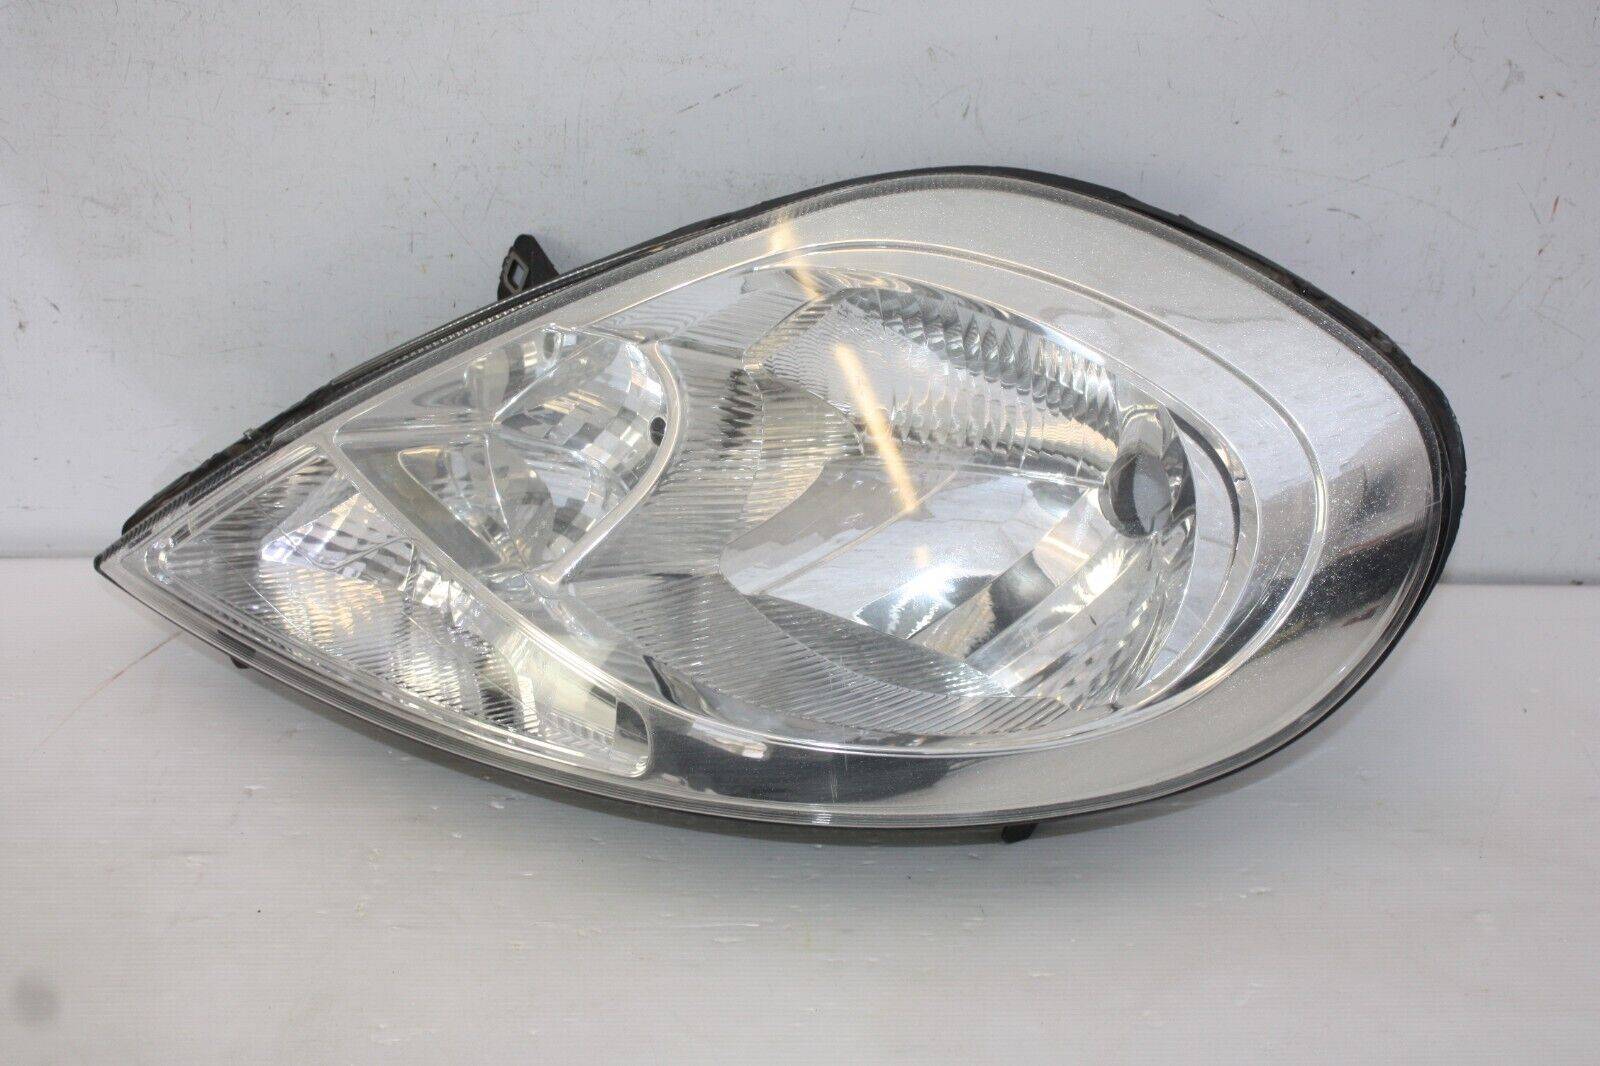 Vauxhall-Vivaro-Left-Side-Headlight-2007-TO-2014-93859833-Genuine-175495458905